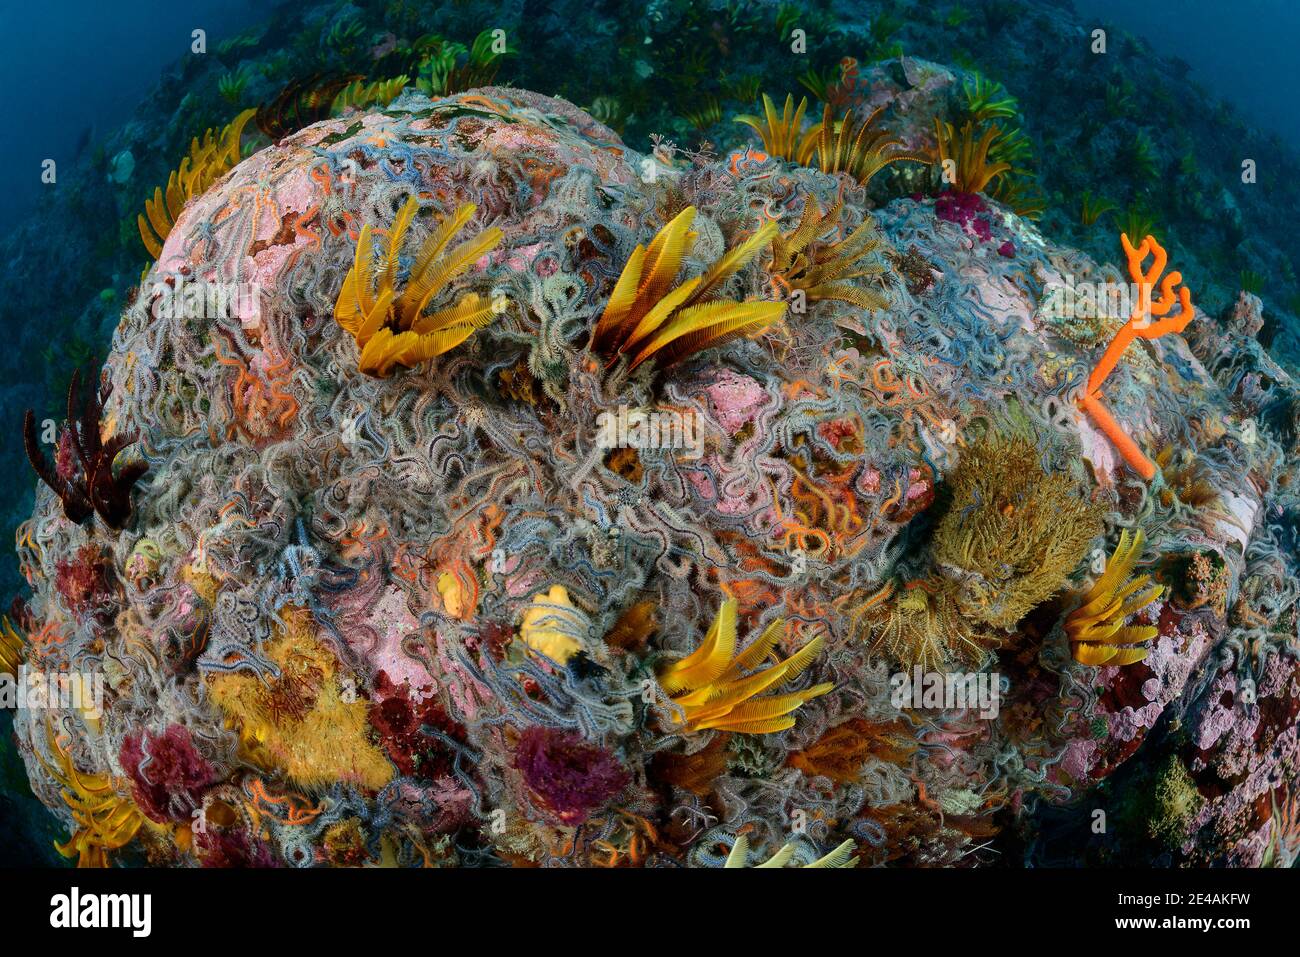 Korallenriff mit brüchigen Sternen, Crinoidea (Klasse) und Federsternen Ophiuroidea (Klasse), False Bay, Simons Town, Südafrika, Indischer Ozean Stockfoto